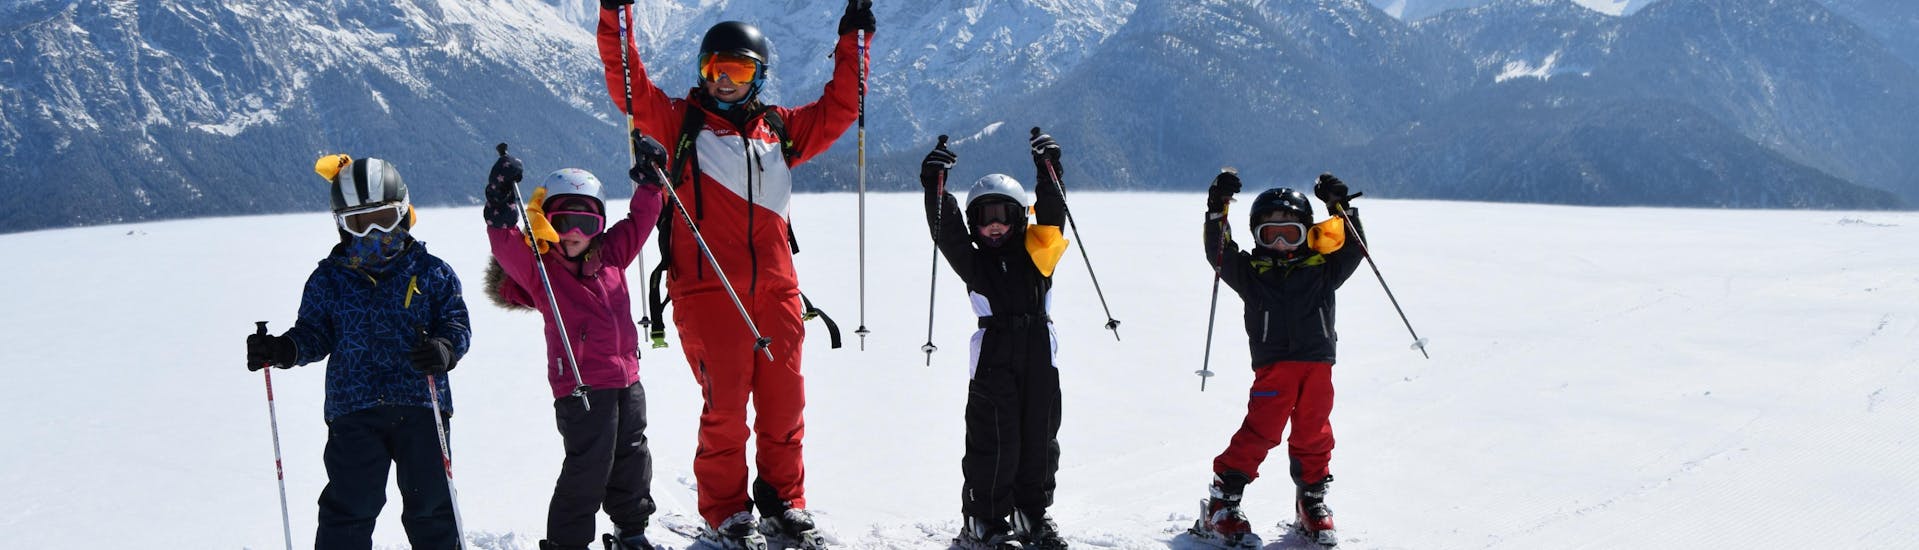 Skilessen voor kinderen (4-11 jaar) voor gevorderde skiërs.